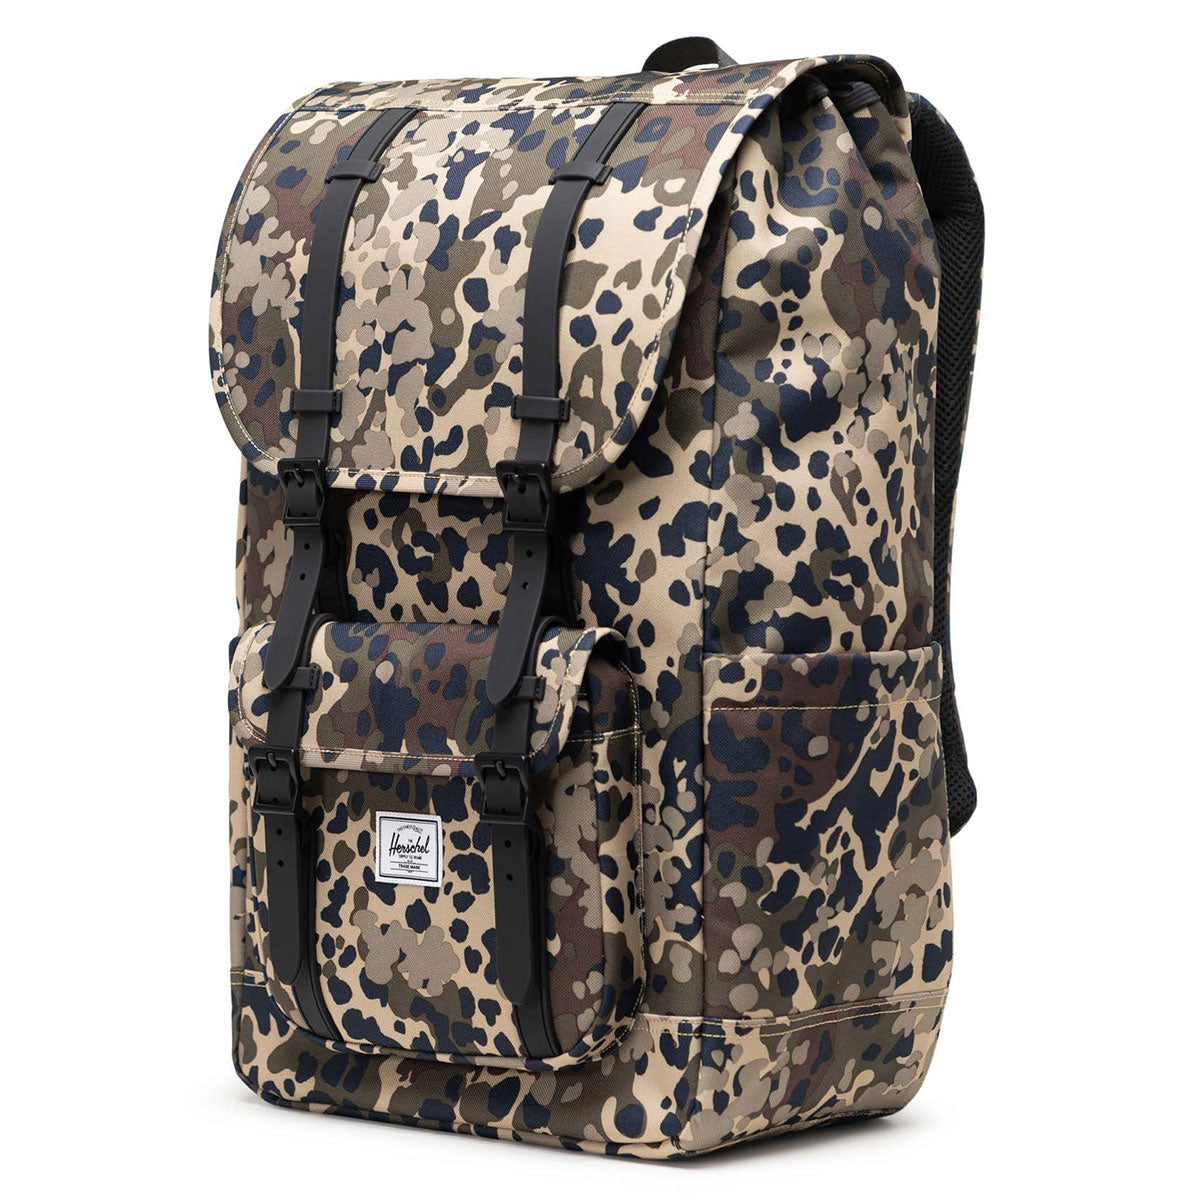 Herschel Supply Little America Backpack - Terrain Camo image 4